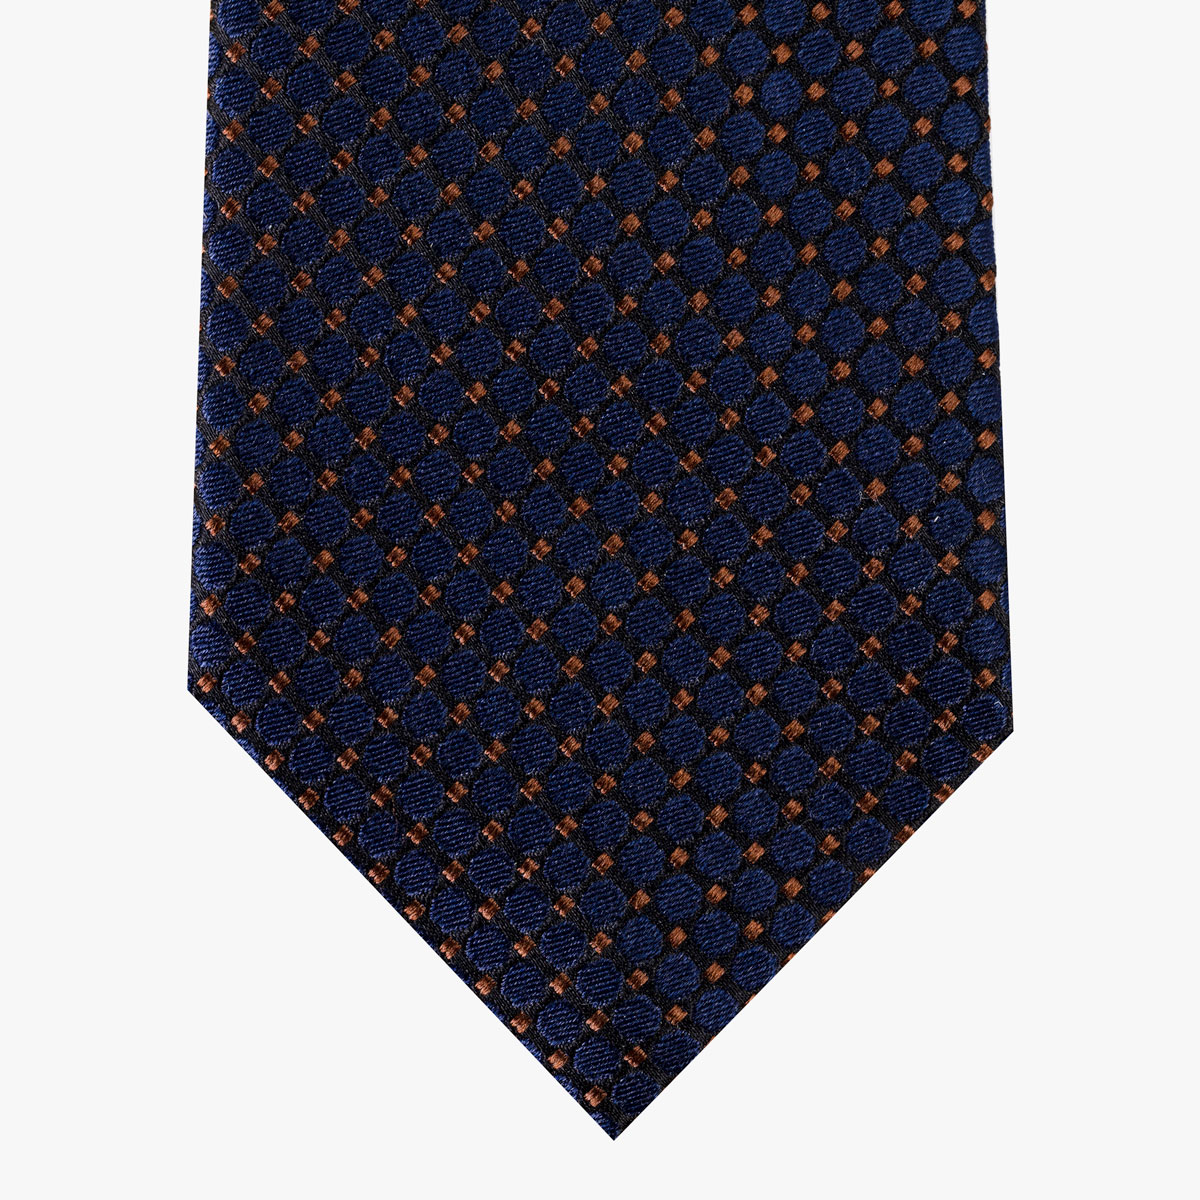 Krawatte mit geometrischem Muster in blau braun